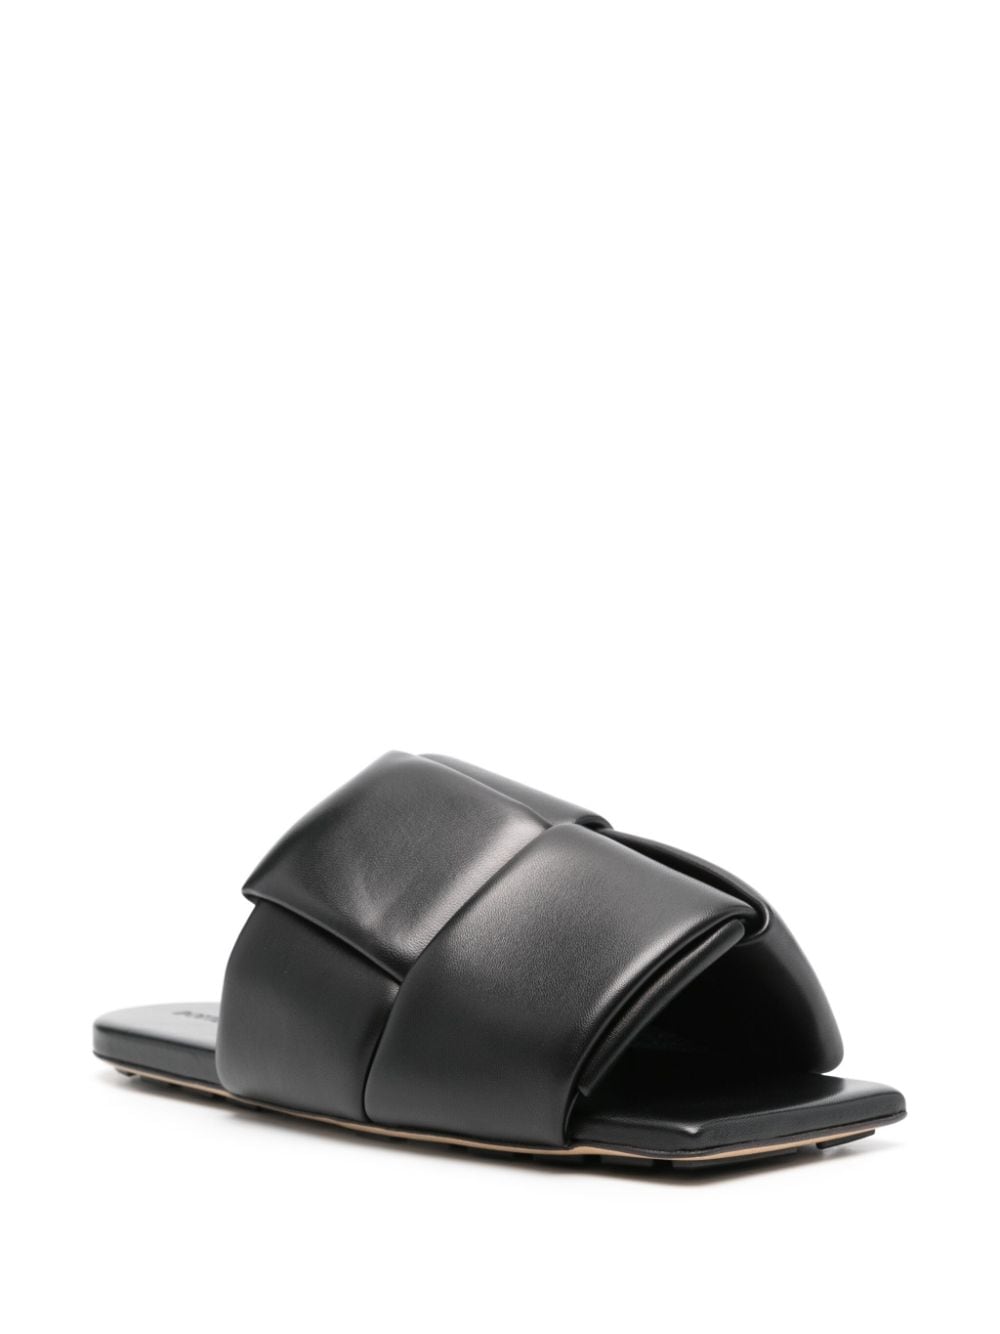 Bottega Veneta interwoven leather flat sandals - Zwart